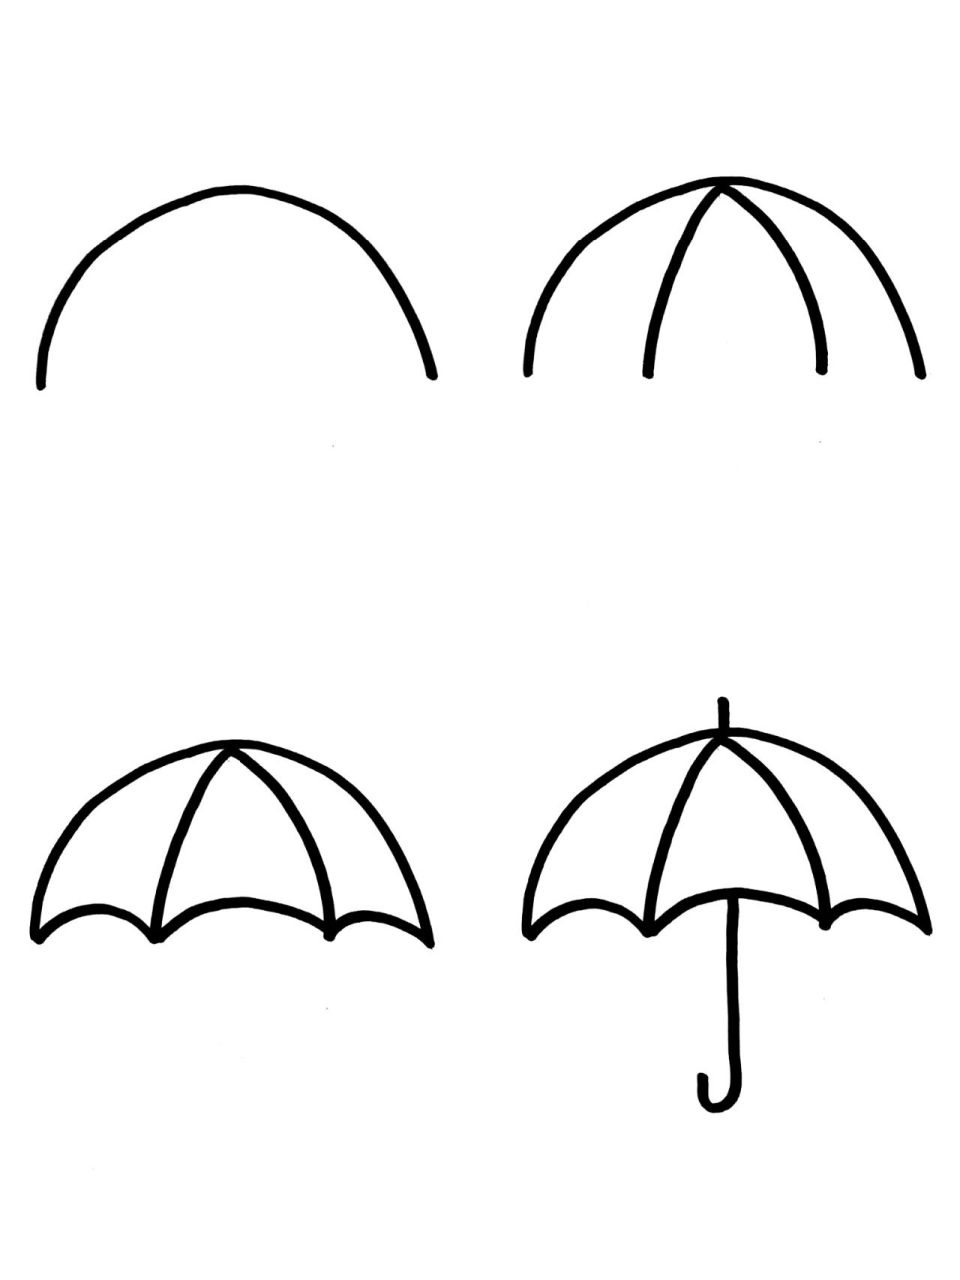 怎样画雨伞漂亮又简单图片